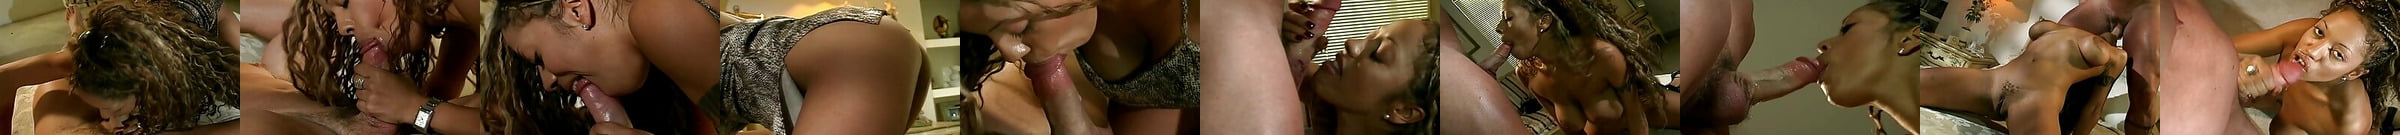 Sexy Big Tit Vanessa Blue Interracial Blowjob Porn D4 Xhamster